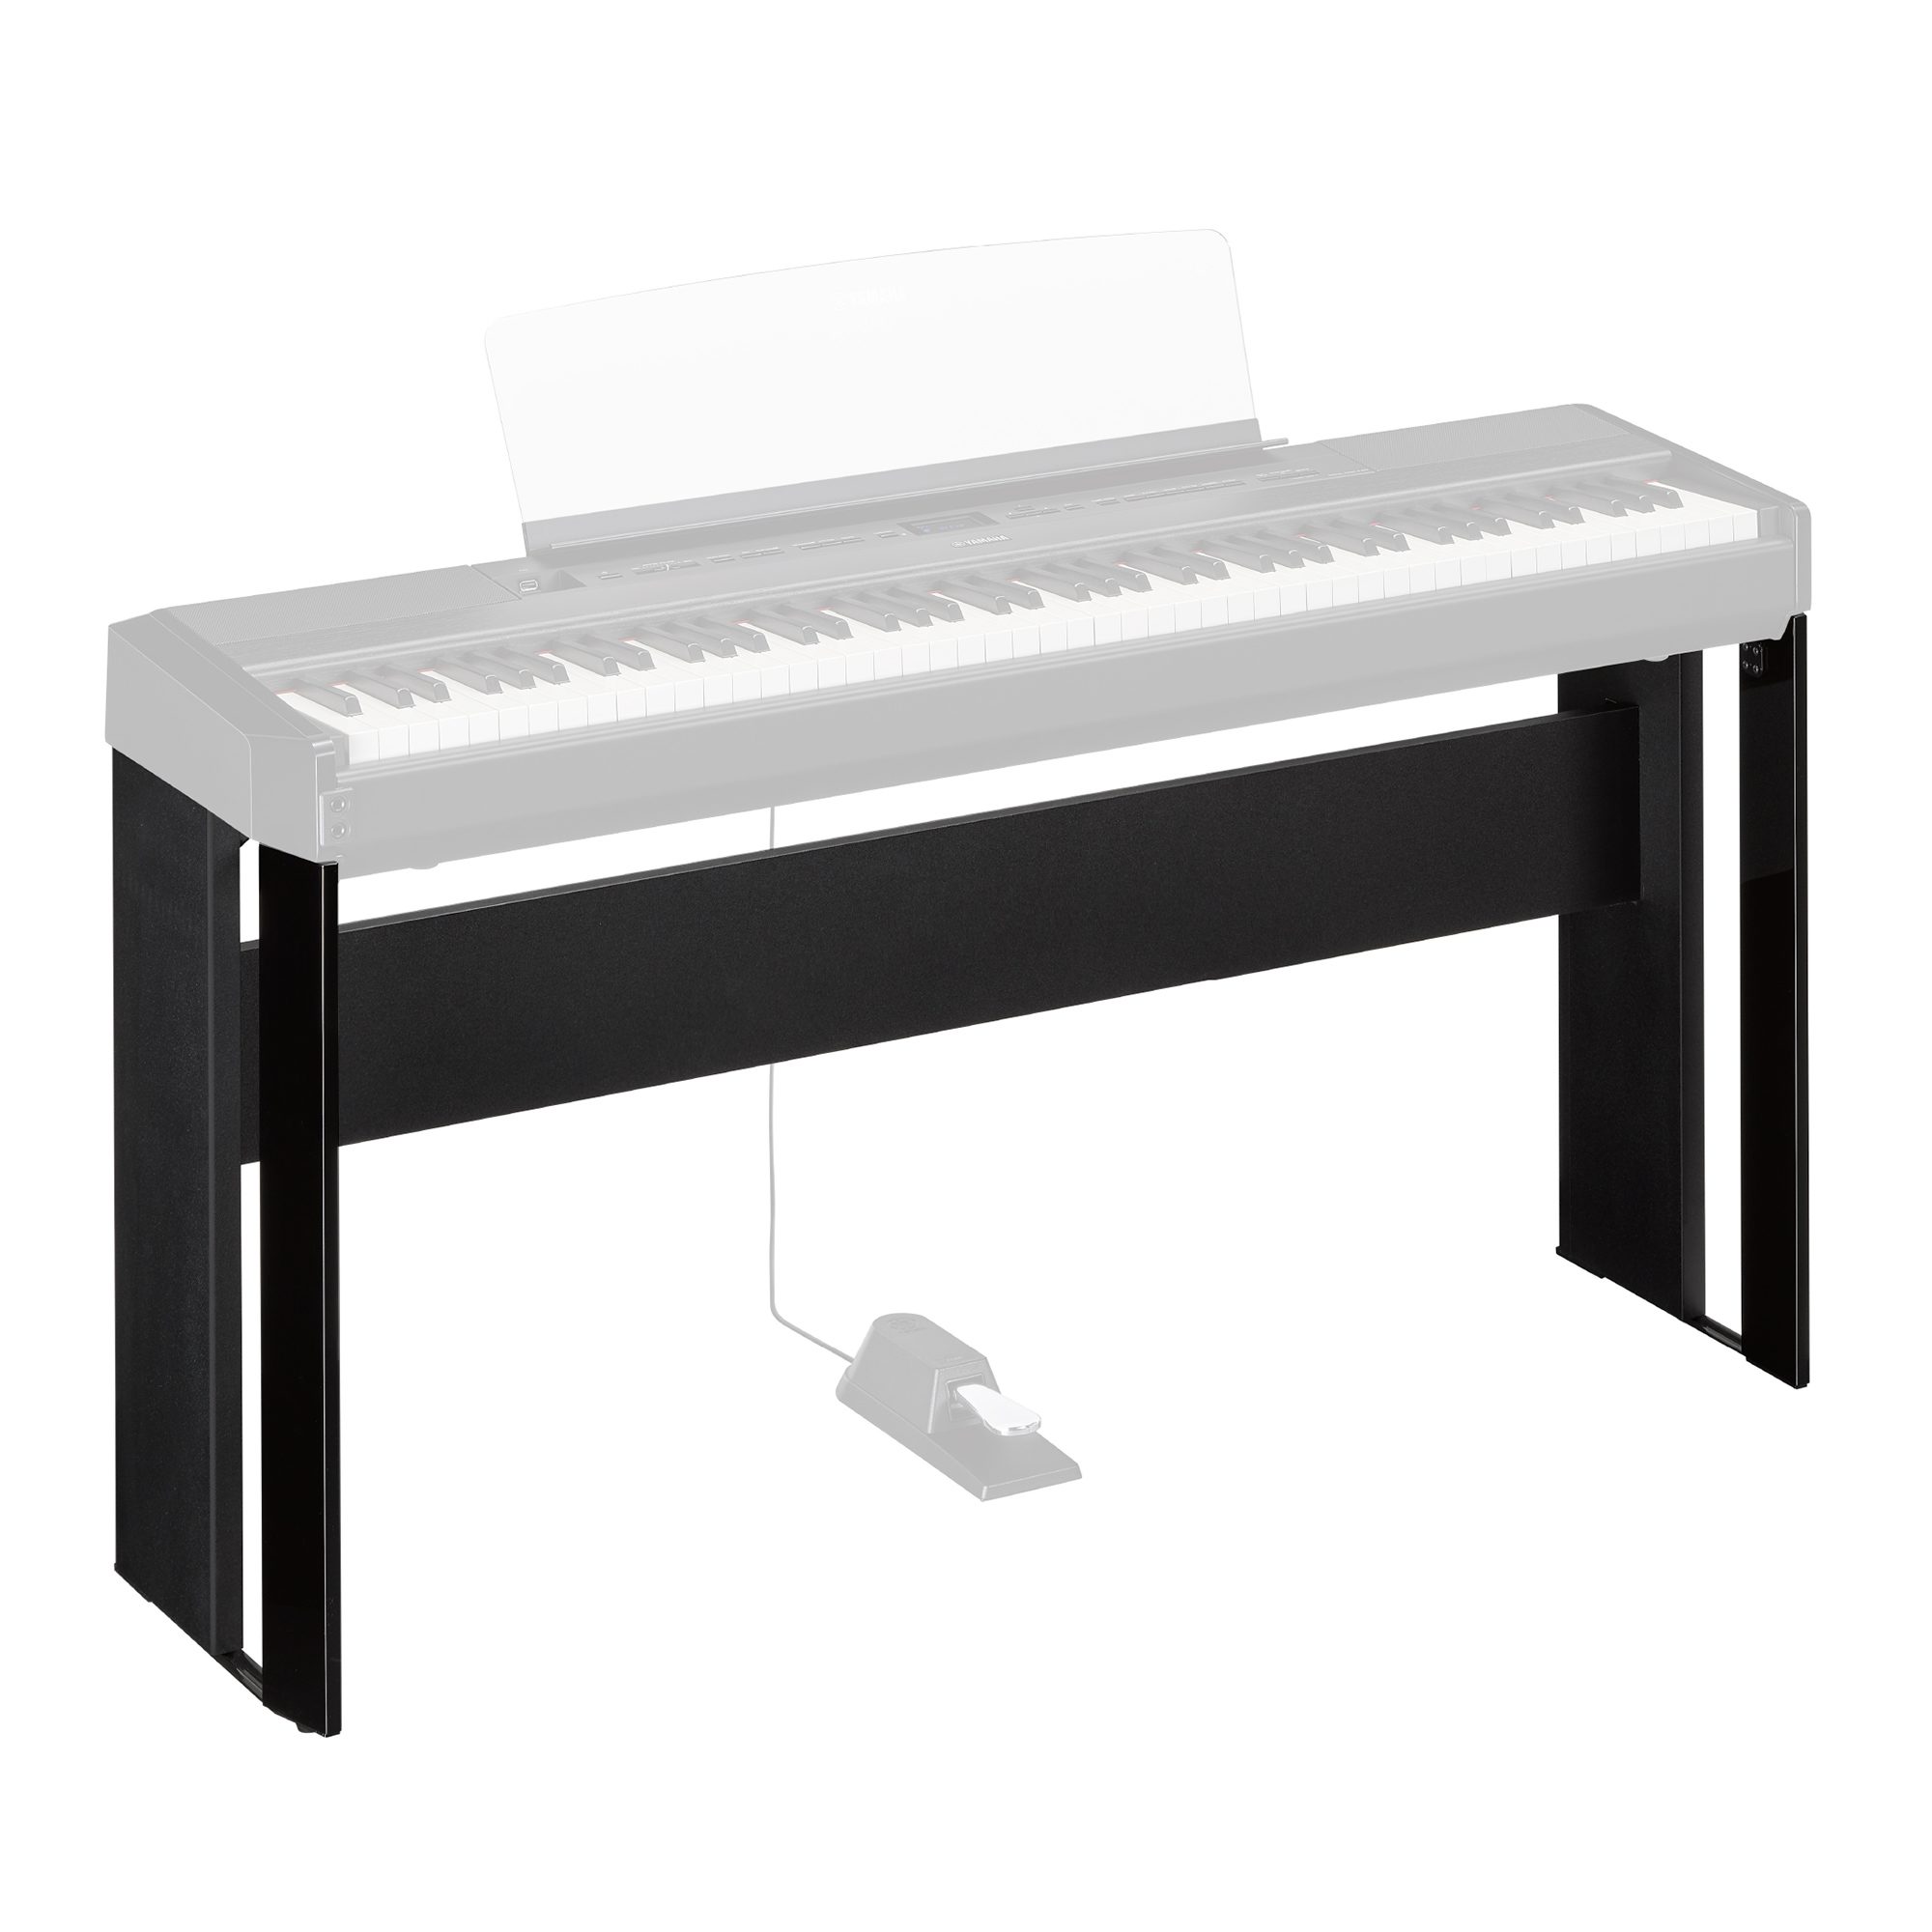 Yamaha - Piano numérique portable P515WH Blanc - Piano numérique